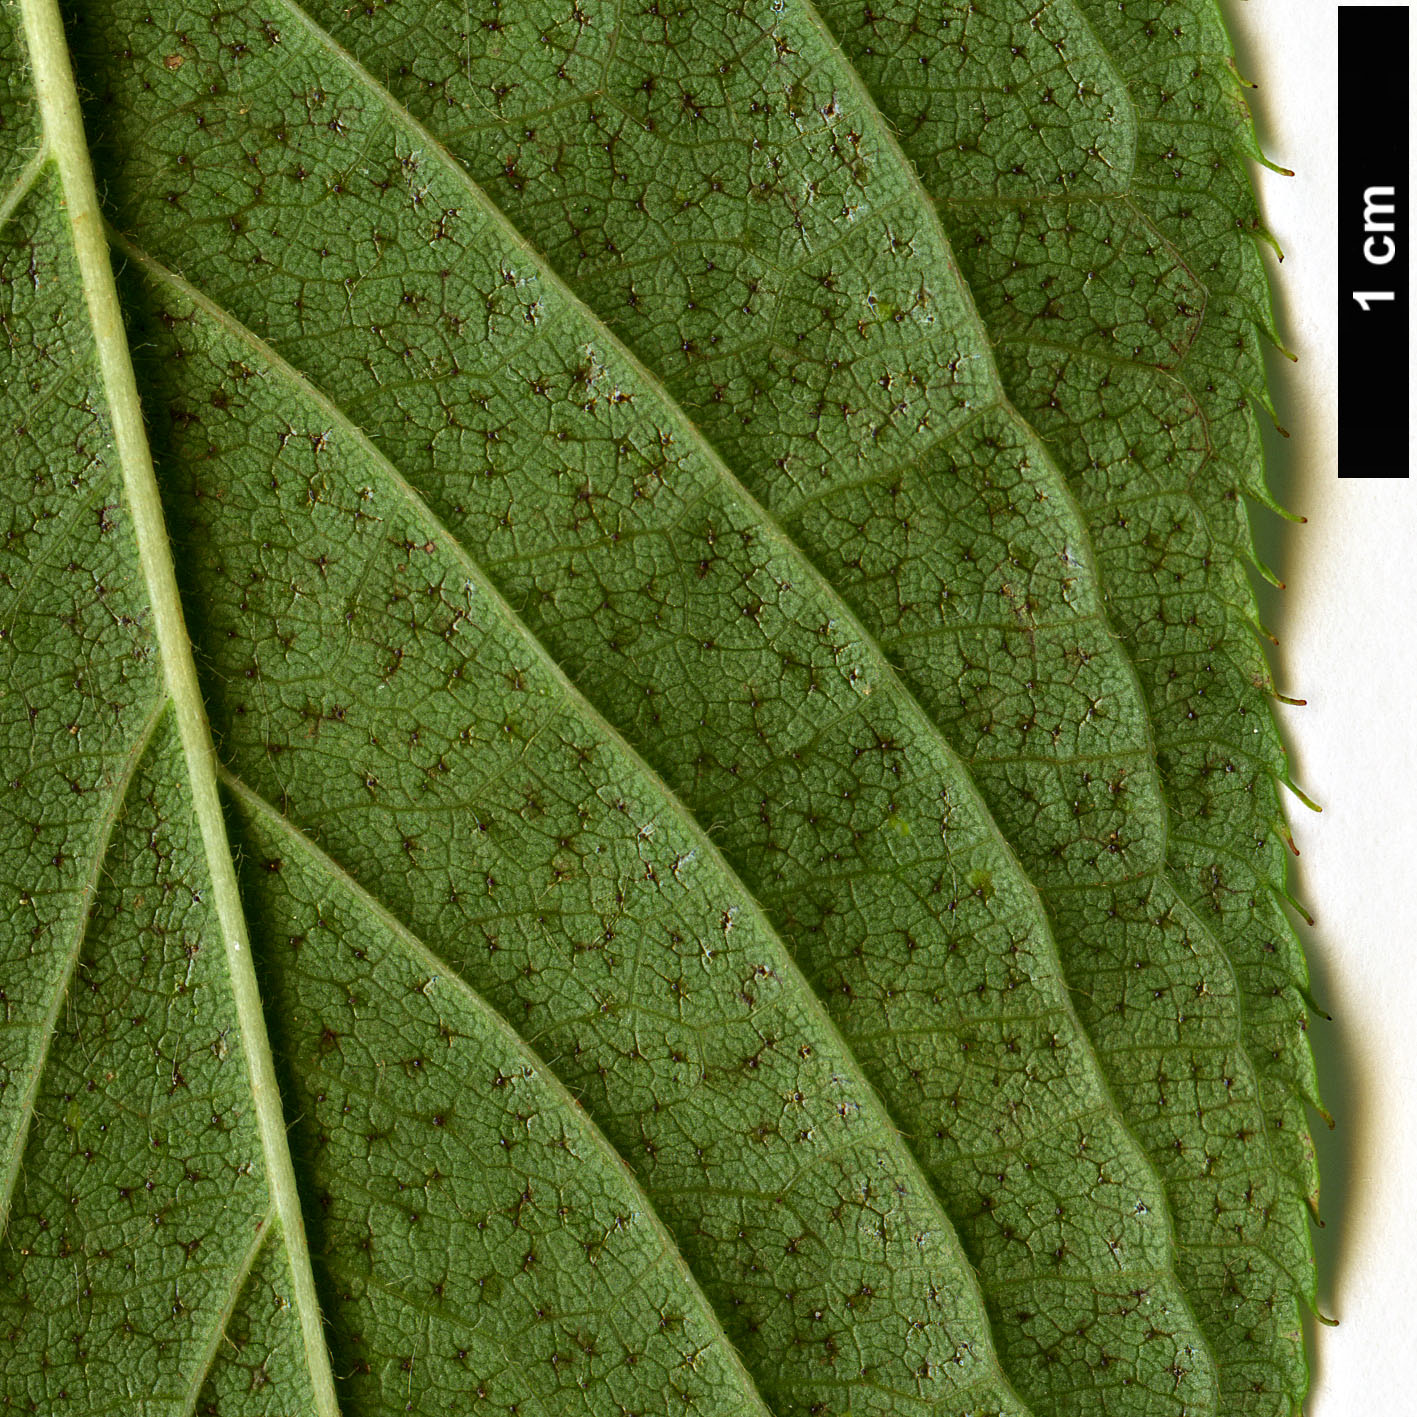 High resolution image: Family: Rosaceae - Genus: Prunus - Taxon: maackii